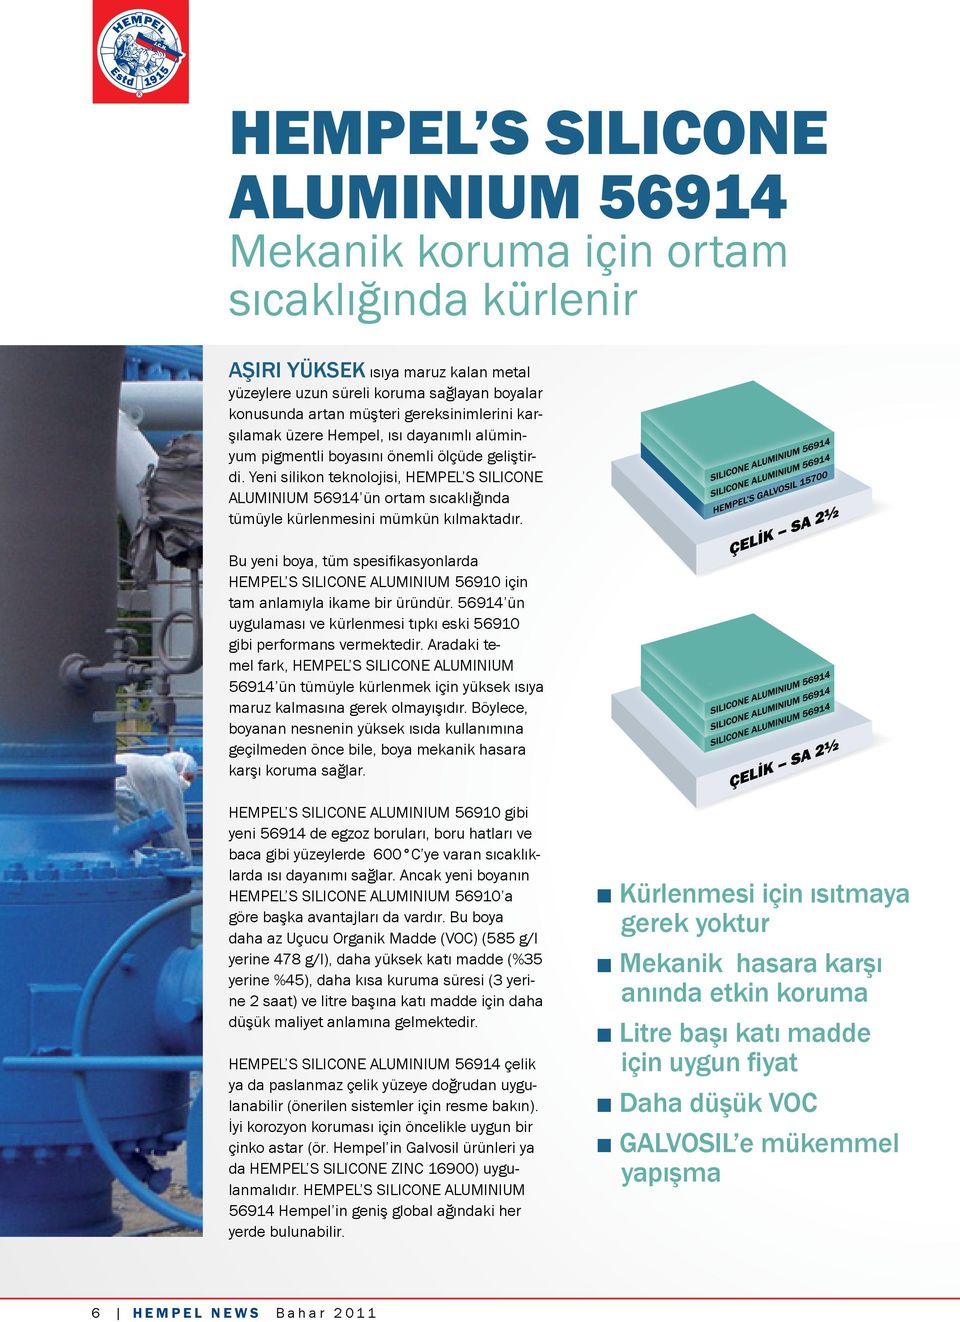 Yeni silikon teknolojisi, HEMPEL S SILICONE ALUMINIUM 56914 ün ortam sıcaklığında tümüyle kürlenmesini mümkün kılmaktadır.